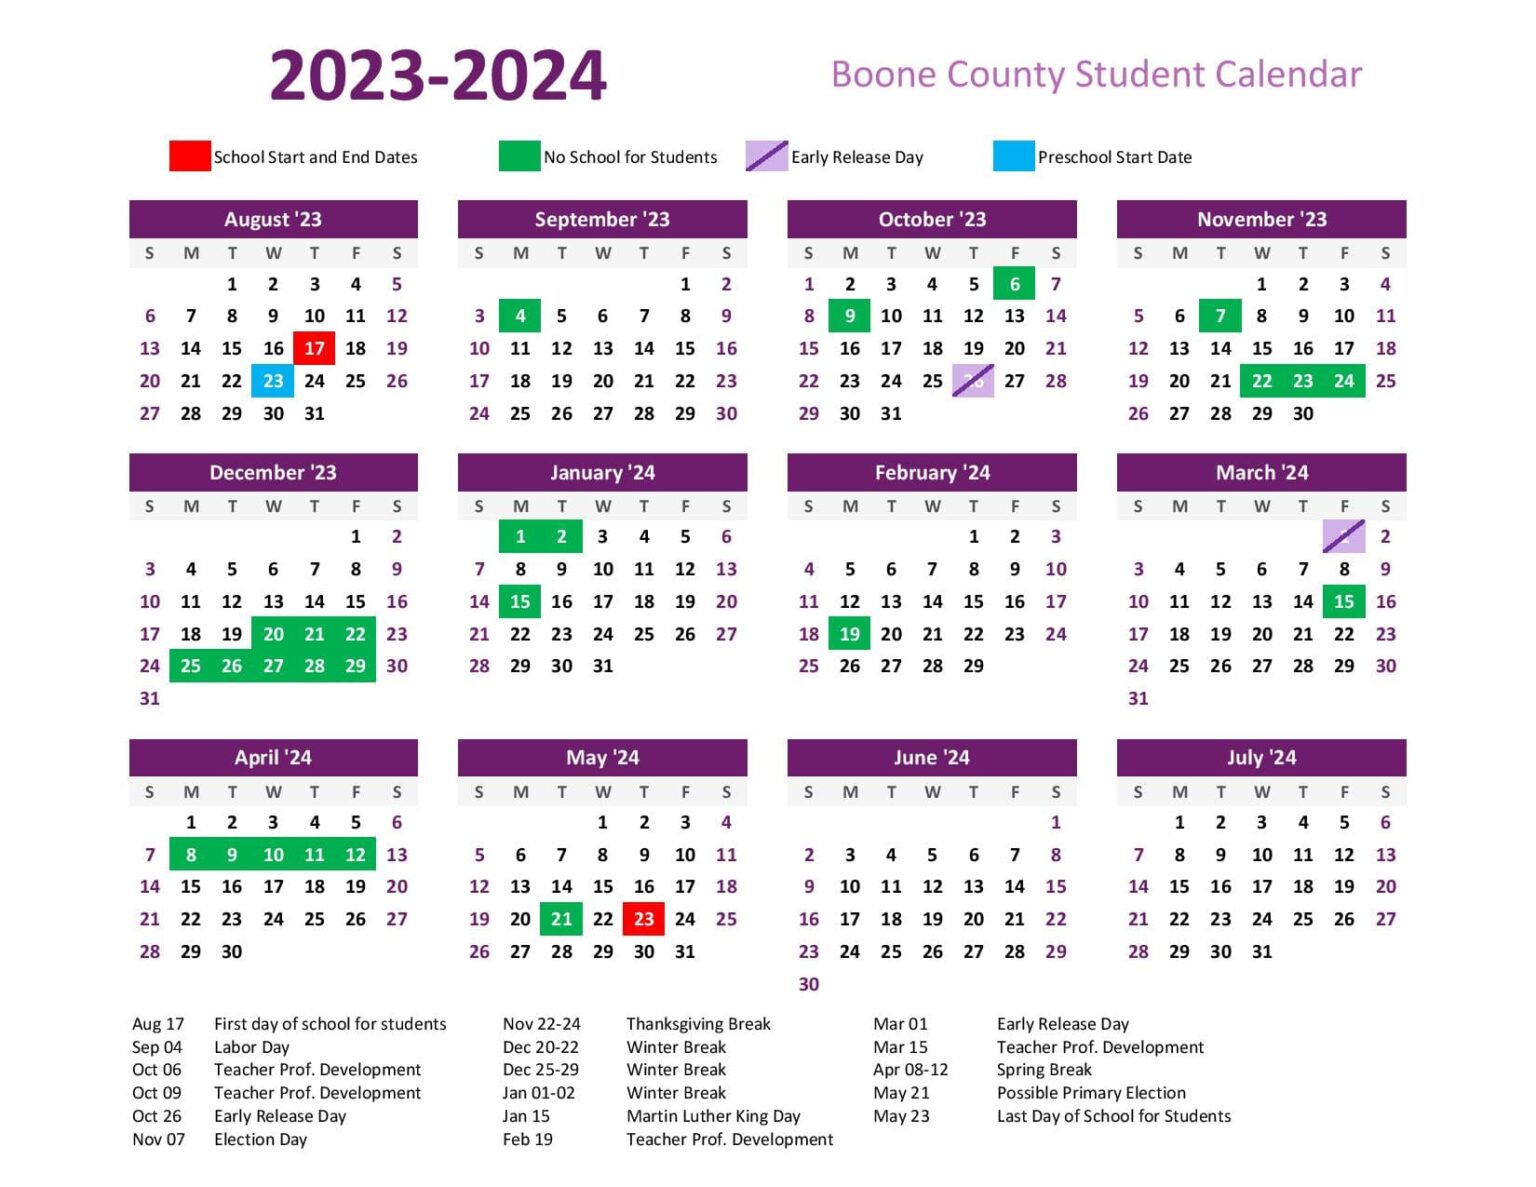 Boone County Schools Calendar 2023 2024 Holidays PDF